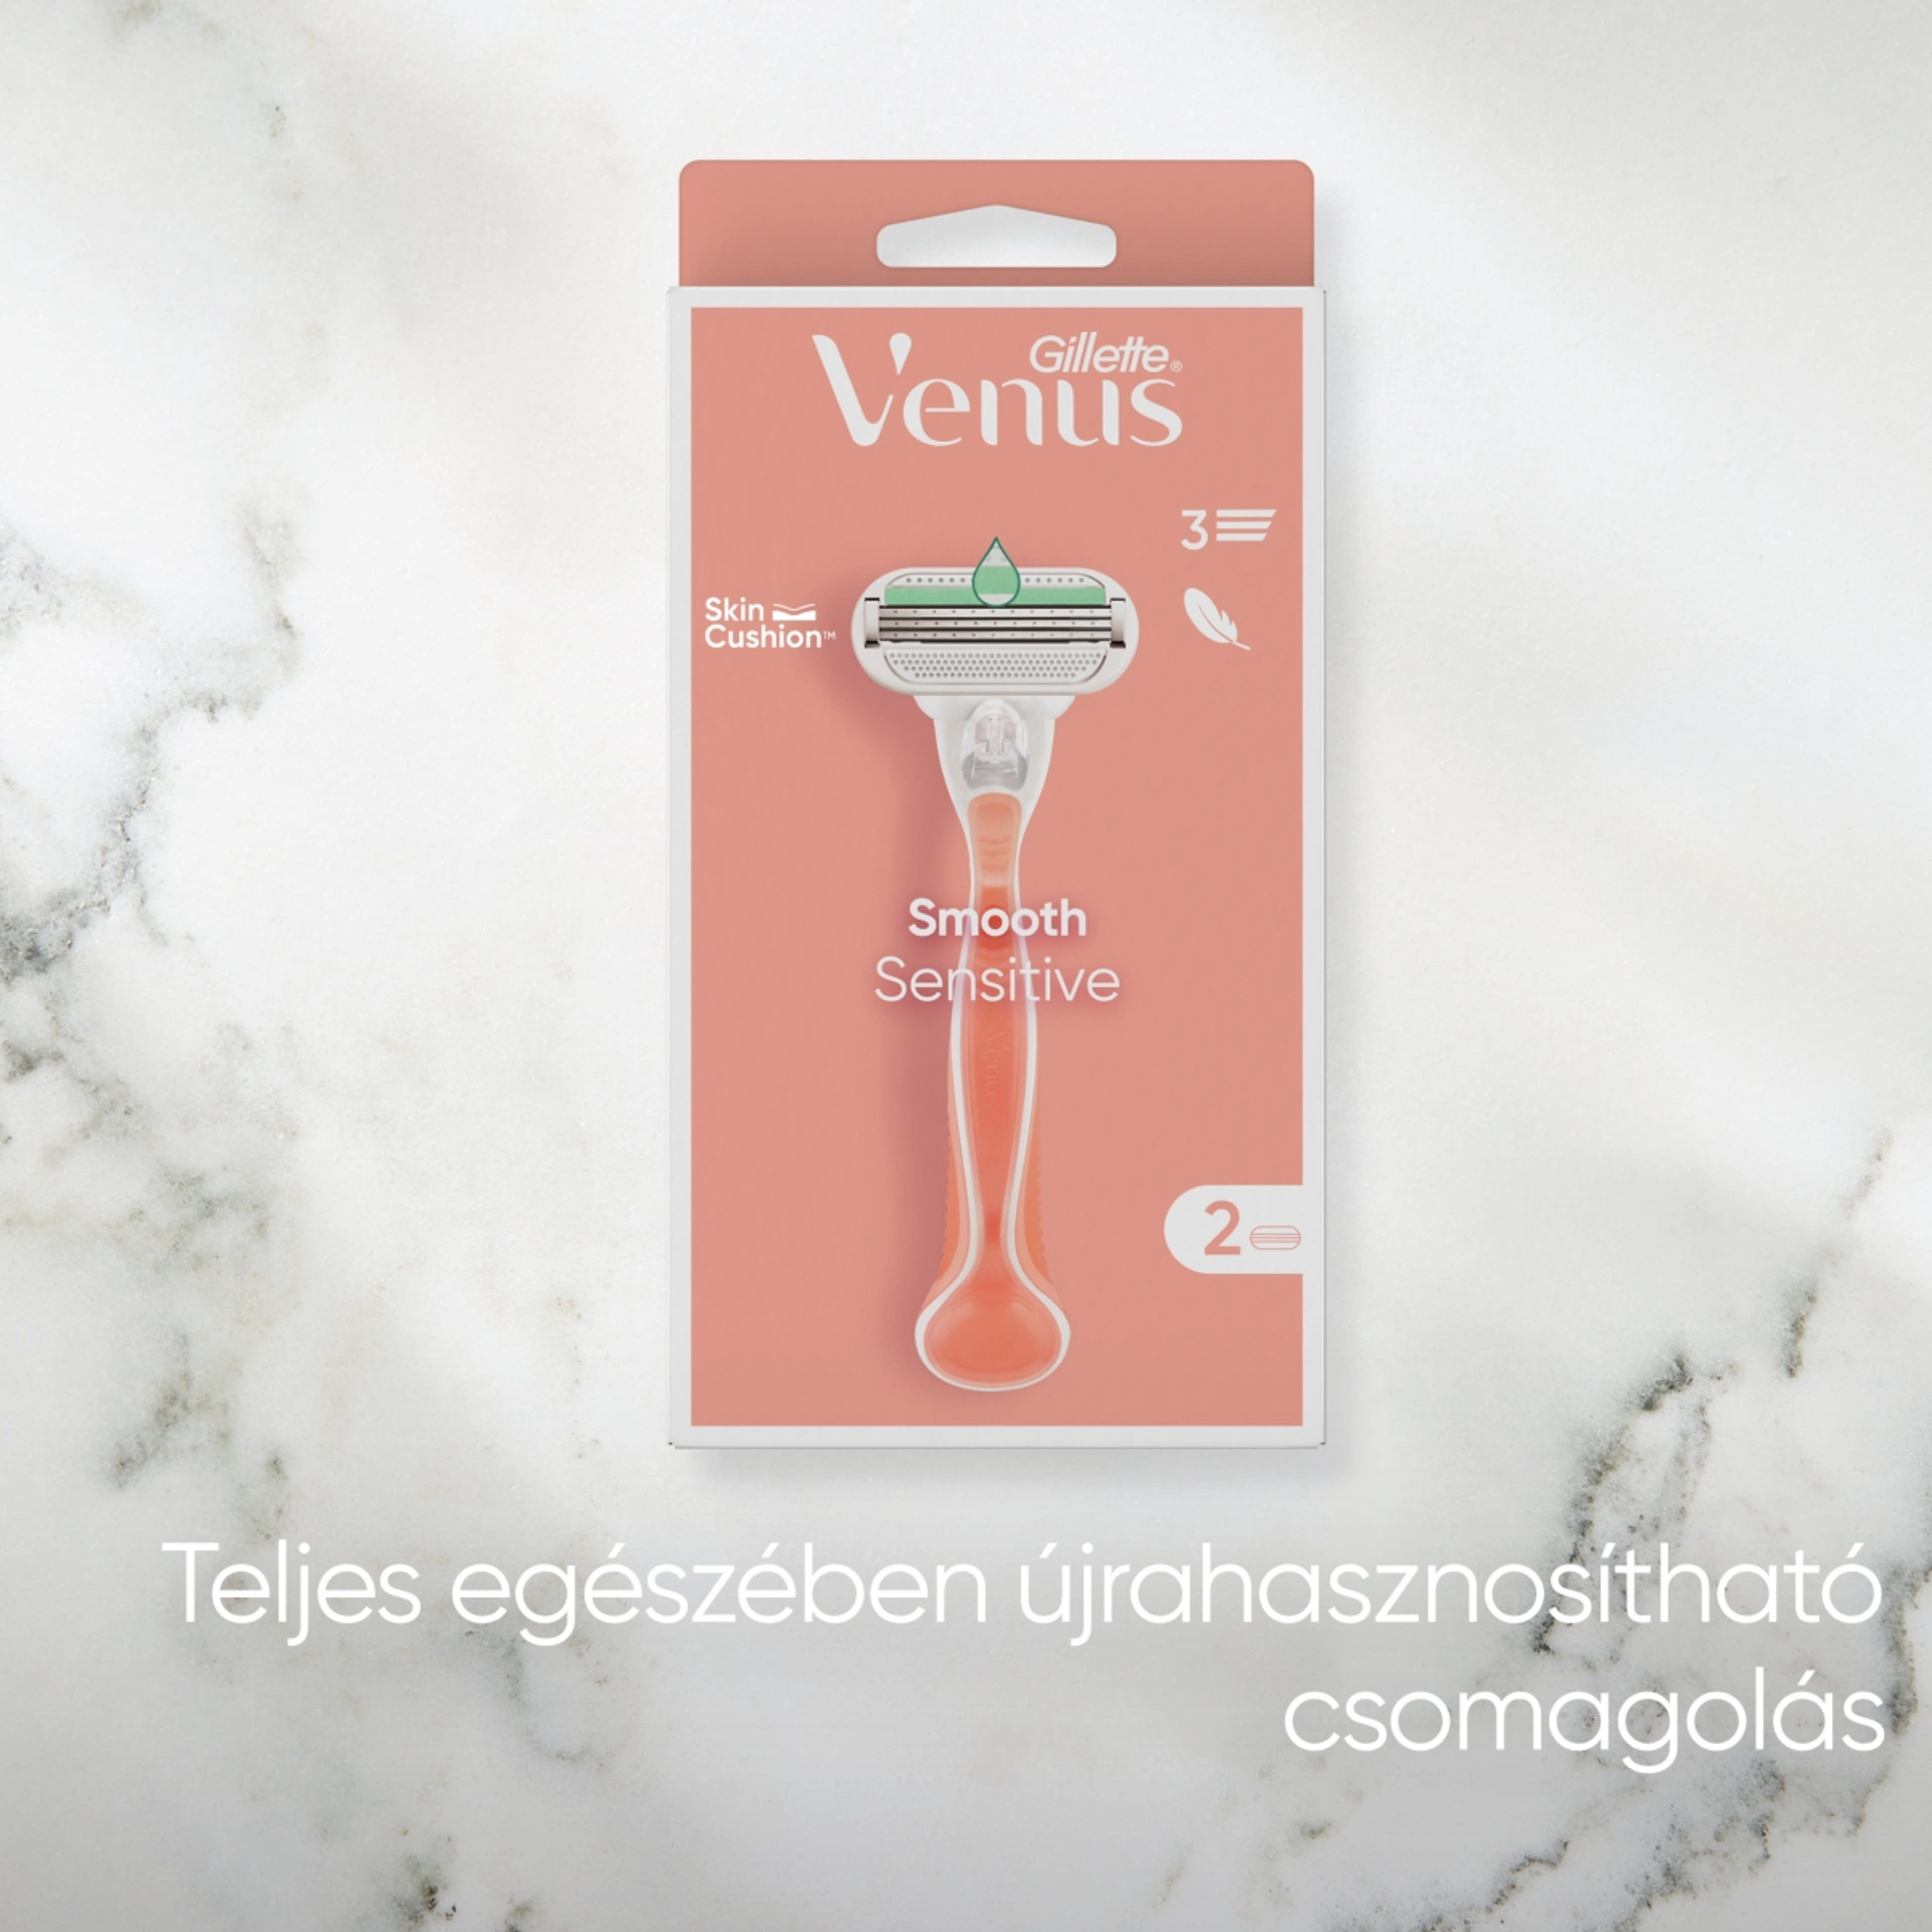 Gillette Venus Smooth Sensitive borotvakészülék 3 pengés + 2 borotvabetét - 1 db-7